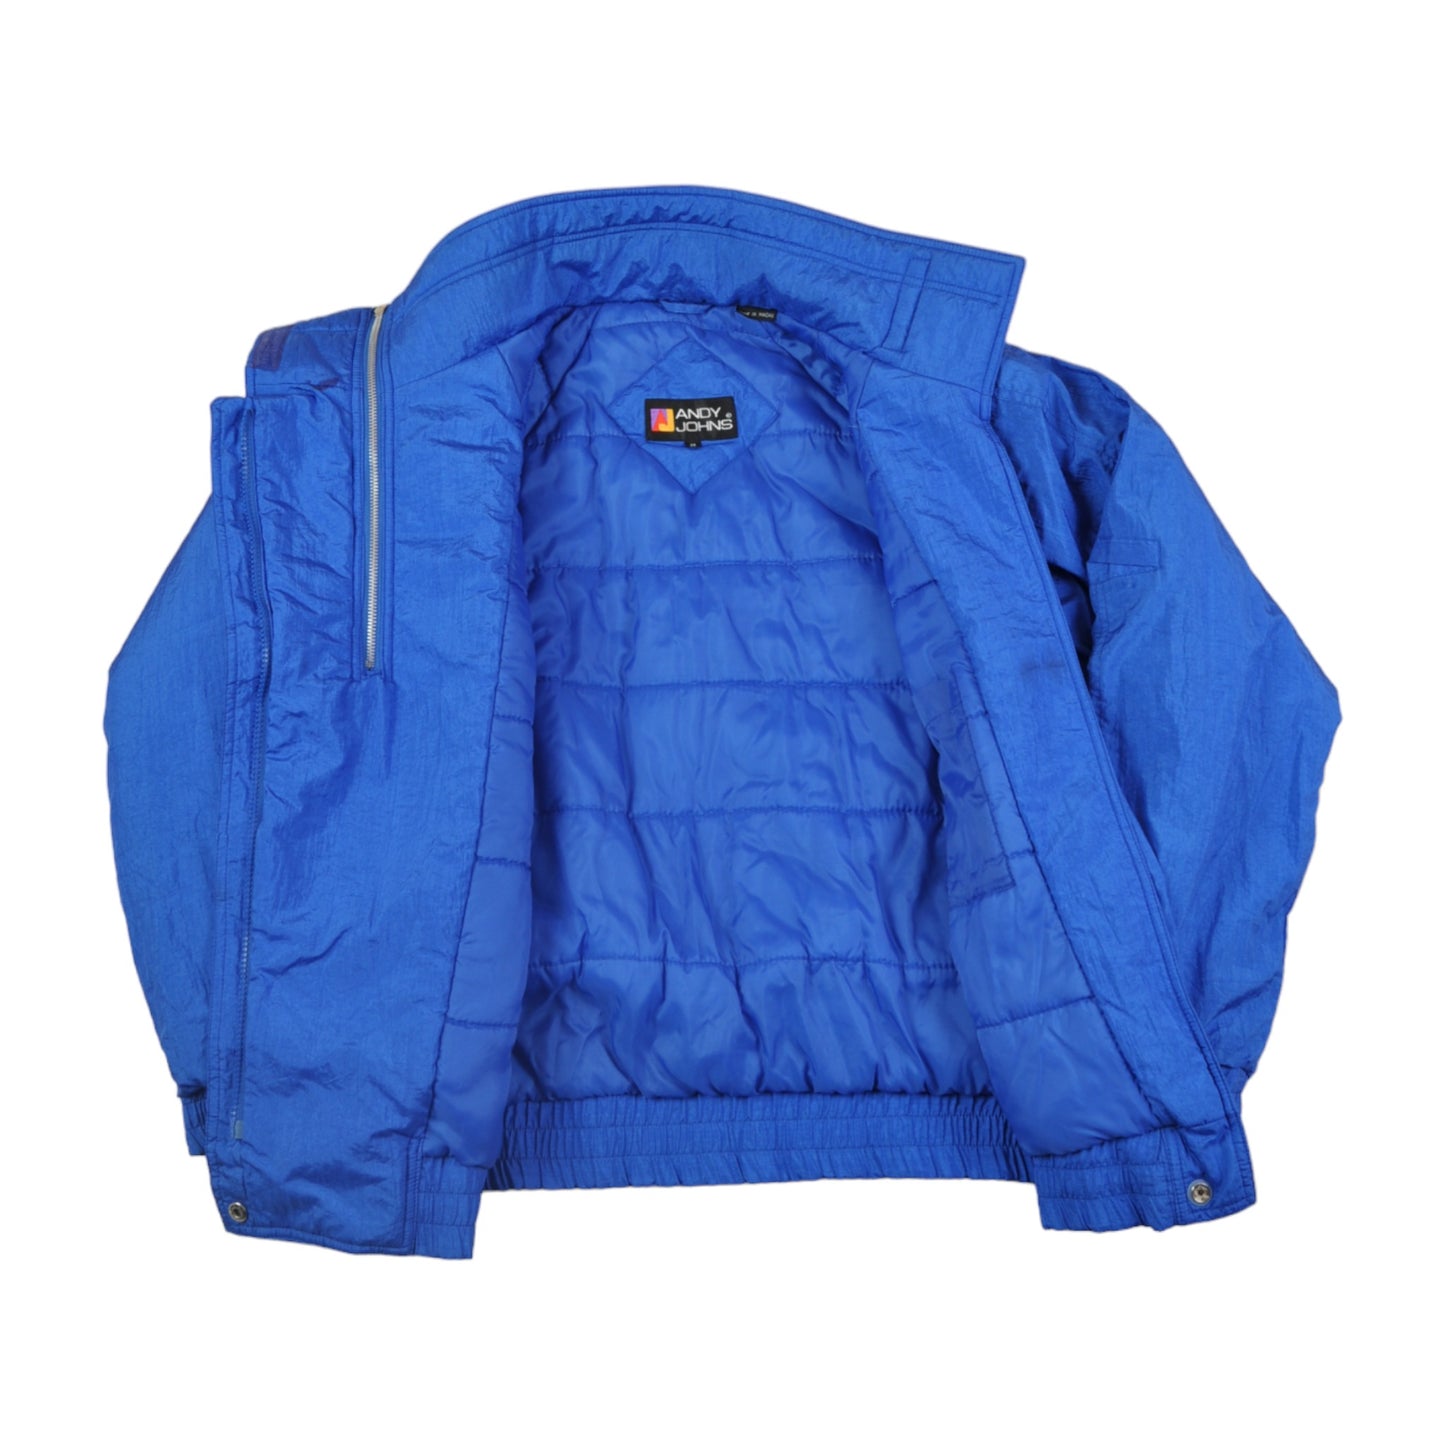 Vintage Ski 1/4 Zip Jacket 80s Style Blue Medium